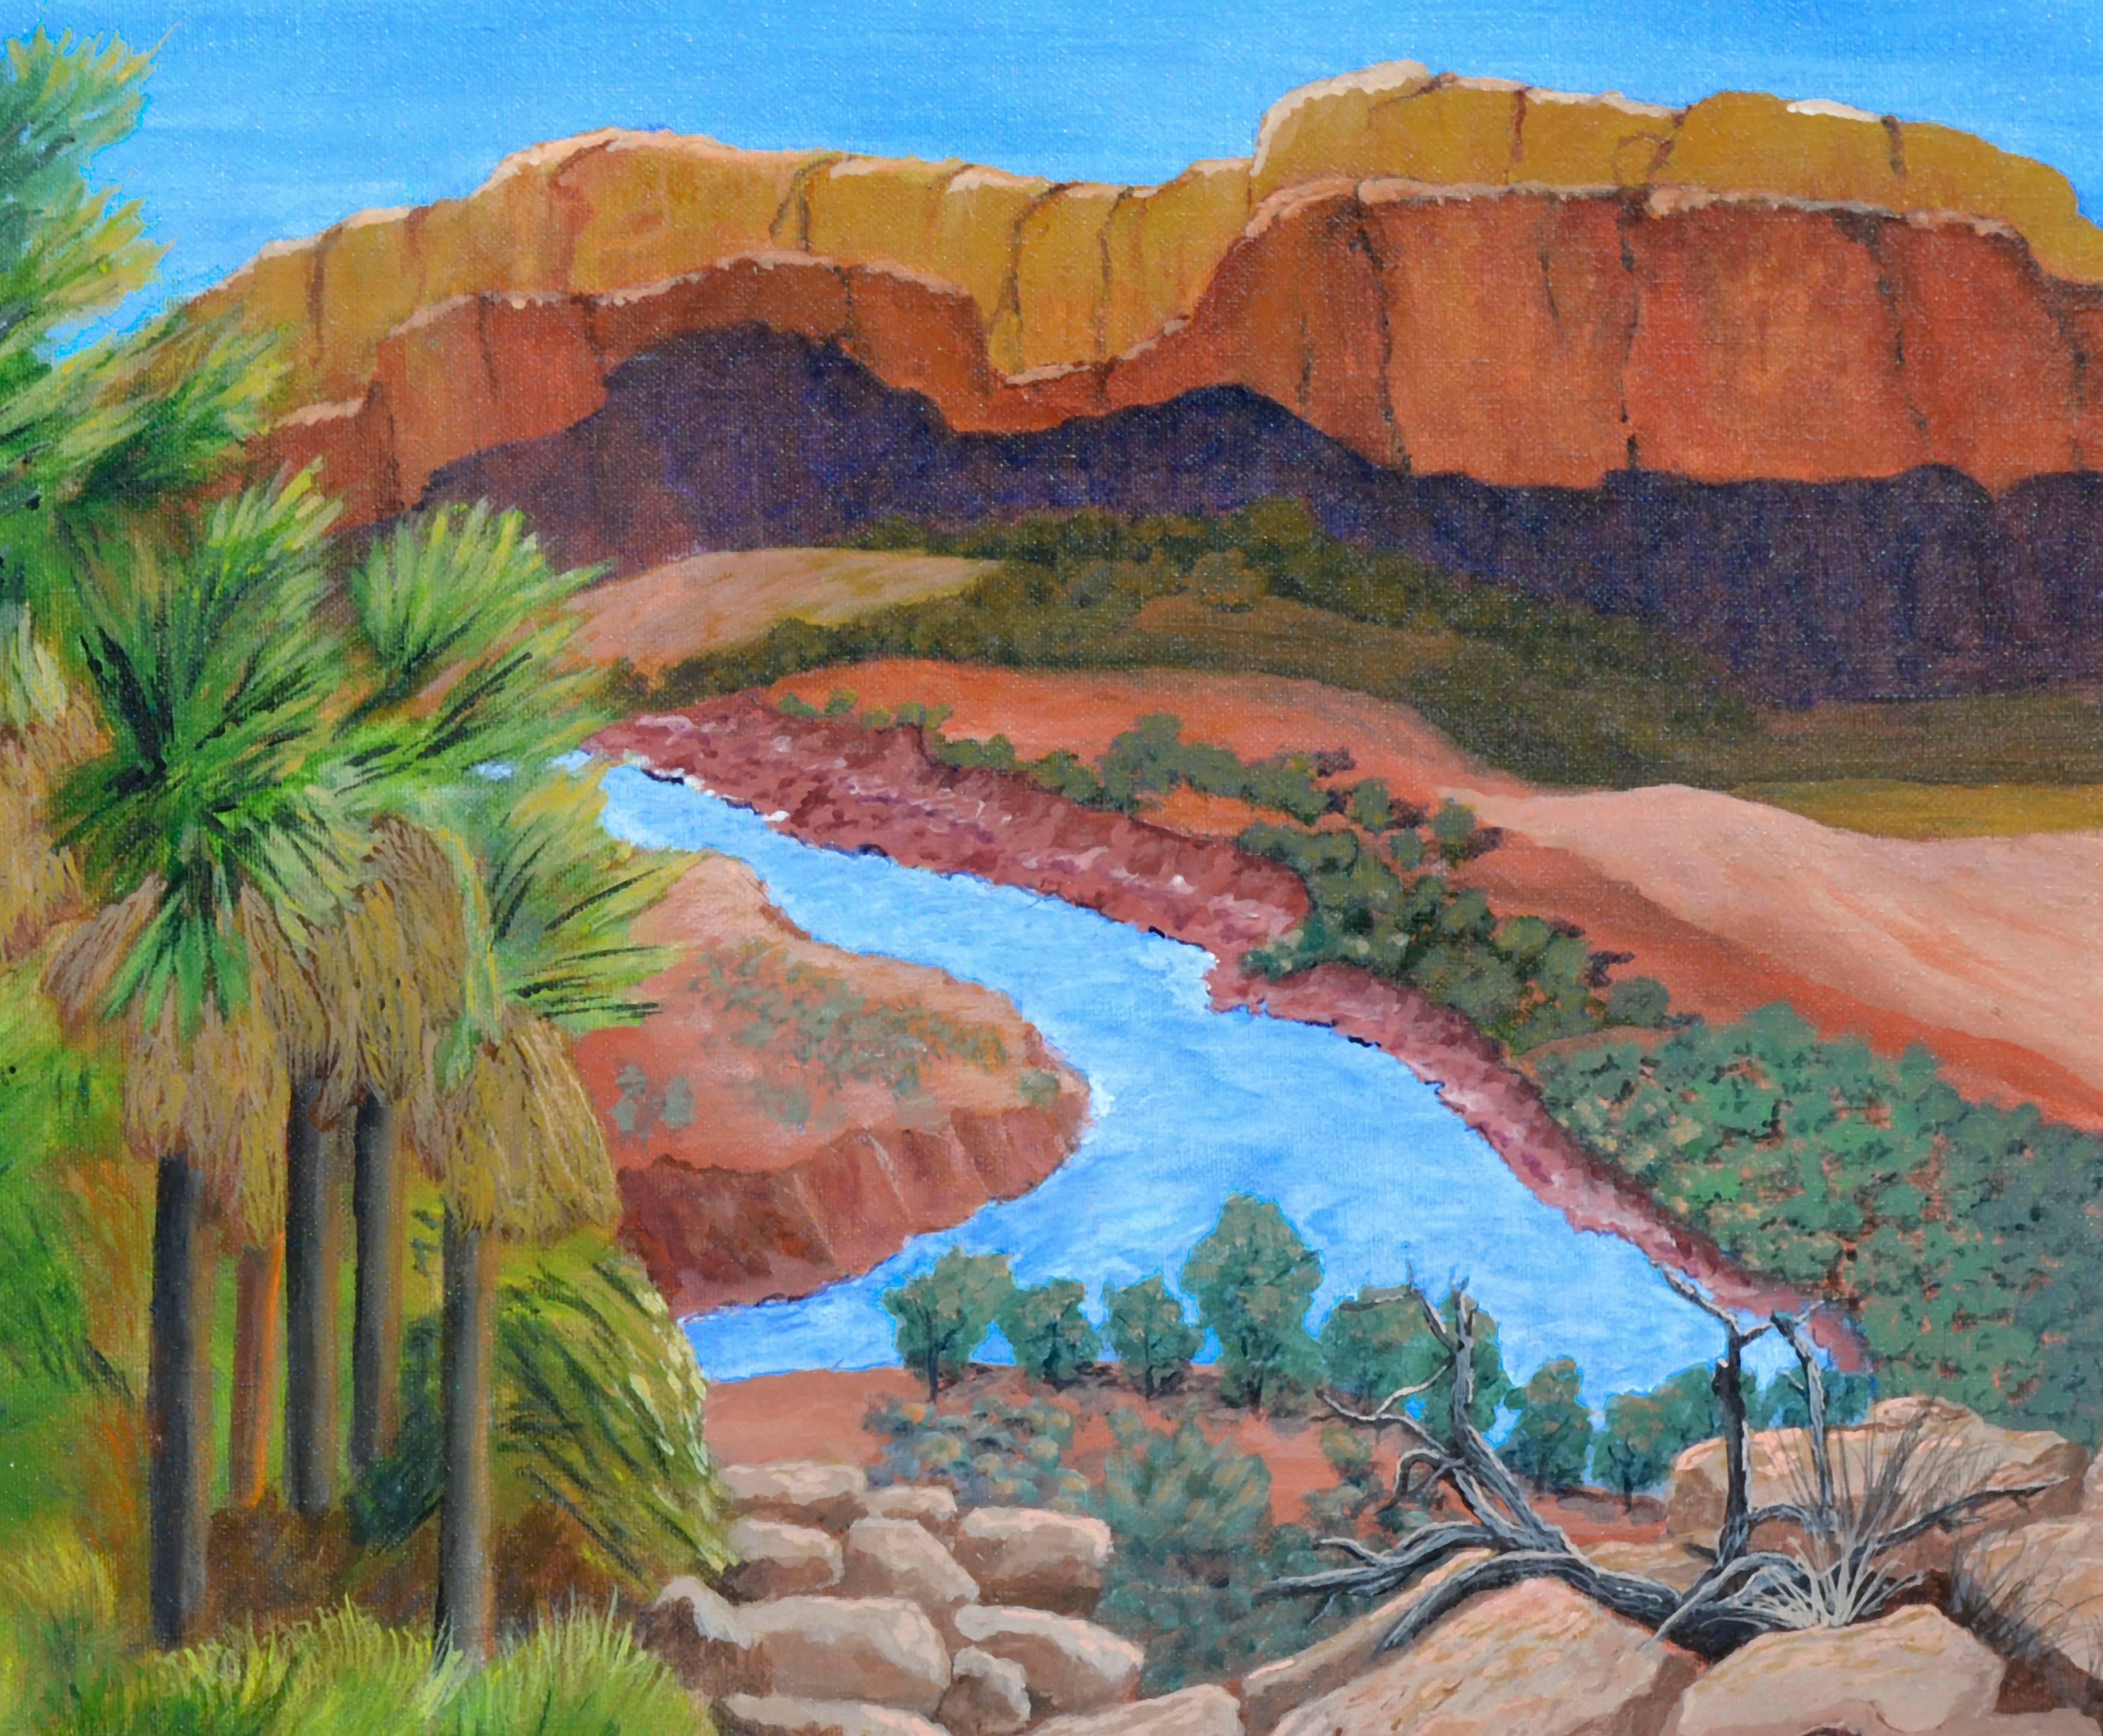 Canyon und Fluss - Wüstenlandschaft  – Painting von Clementine Cote